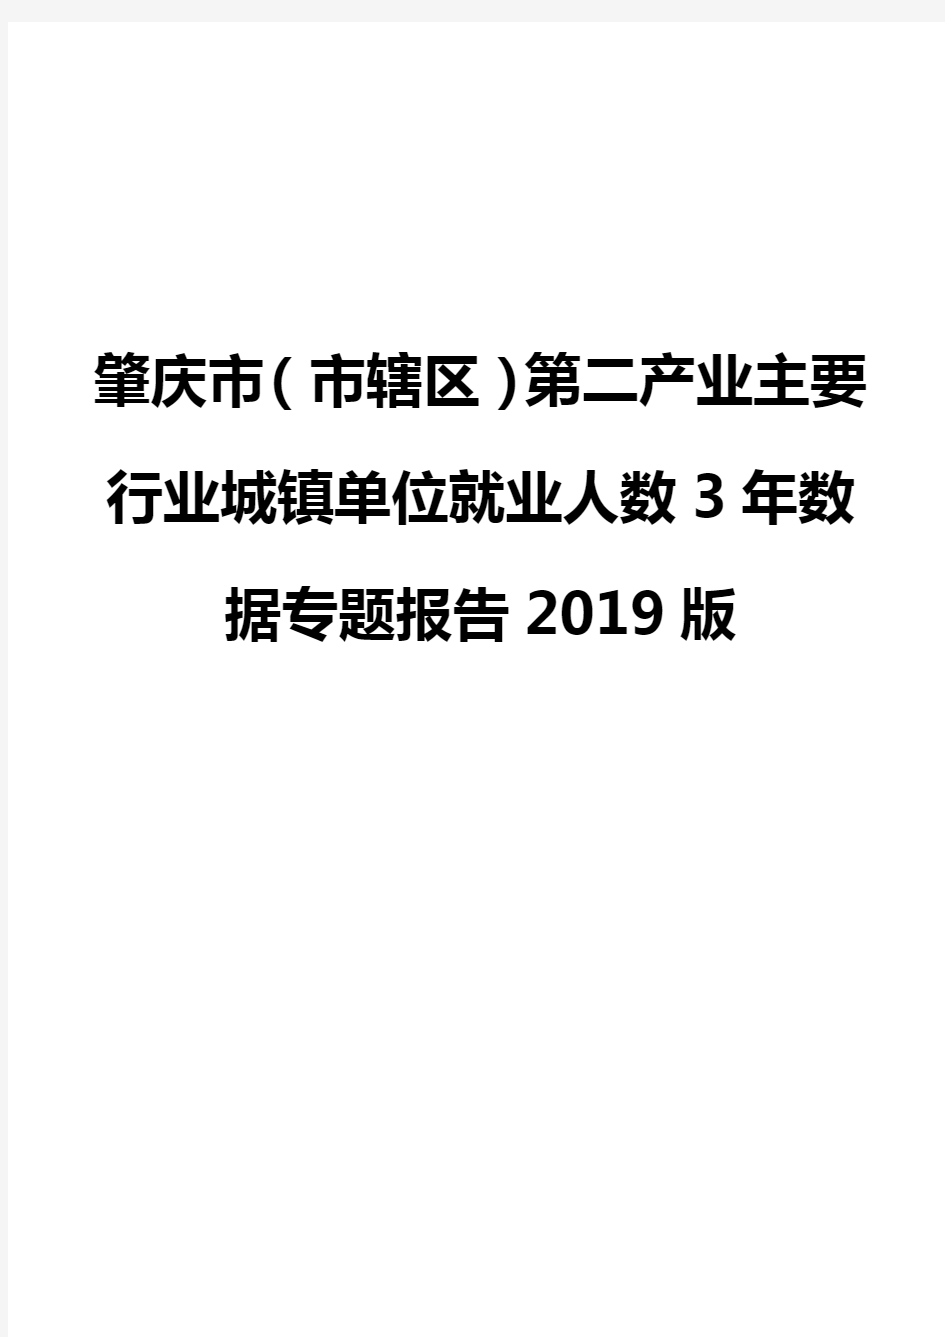 肇庆市(市辖区)第二产业主要行业城镇单位就业人数3年数据专题报告2019版